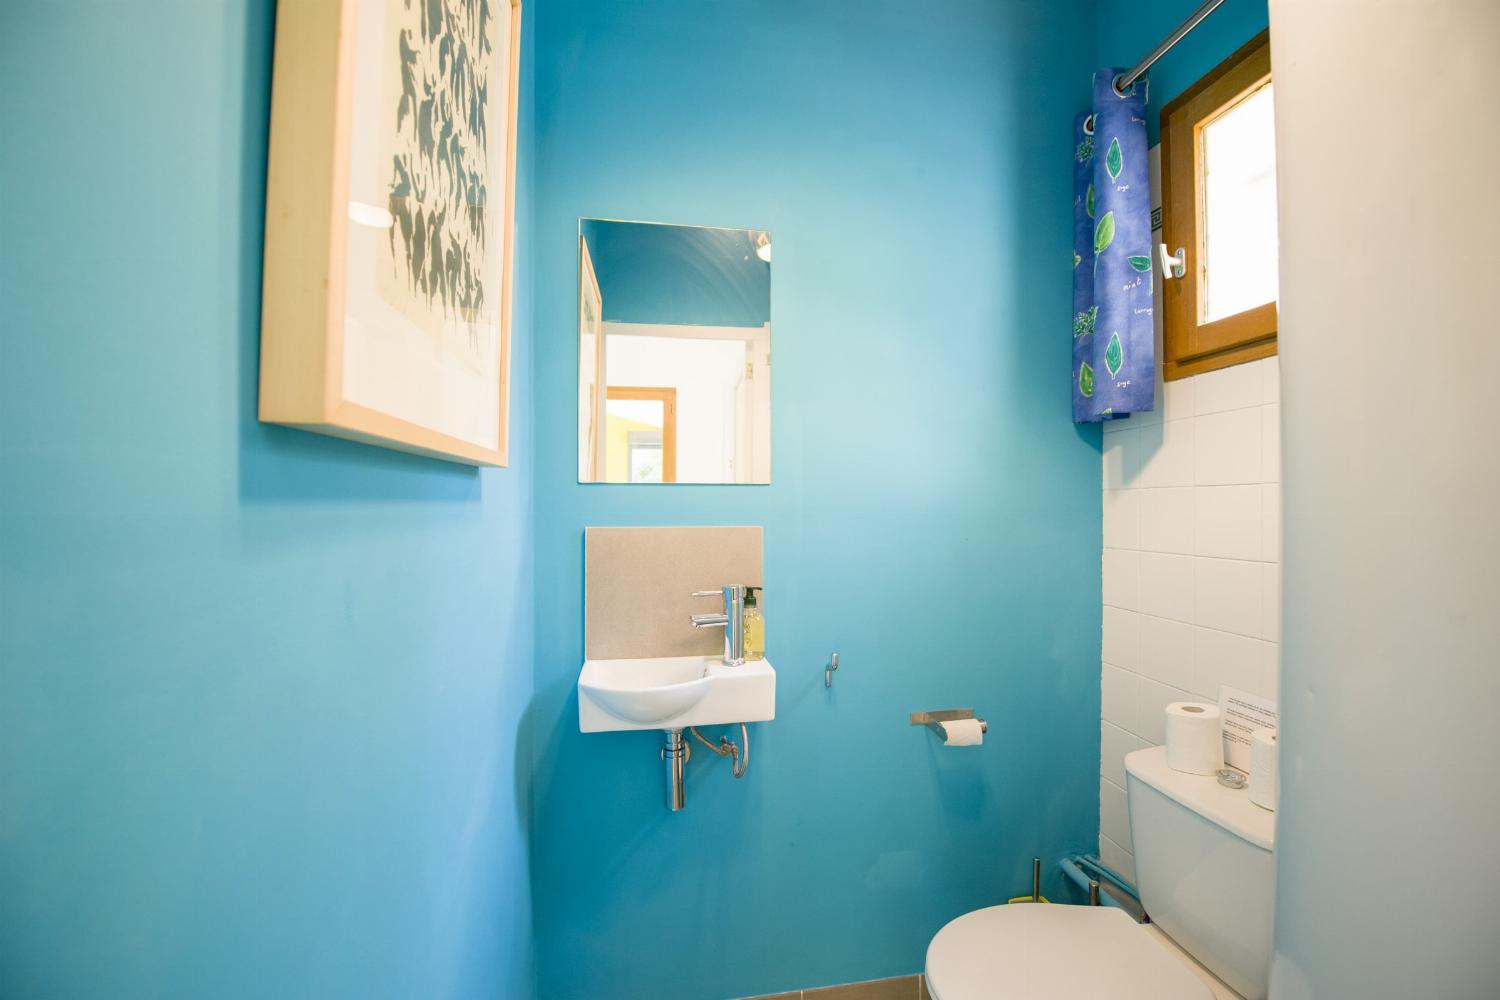 Salle de bain | Villa de vacances dans le sud de la France